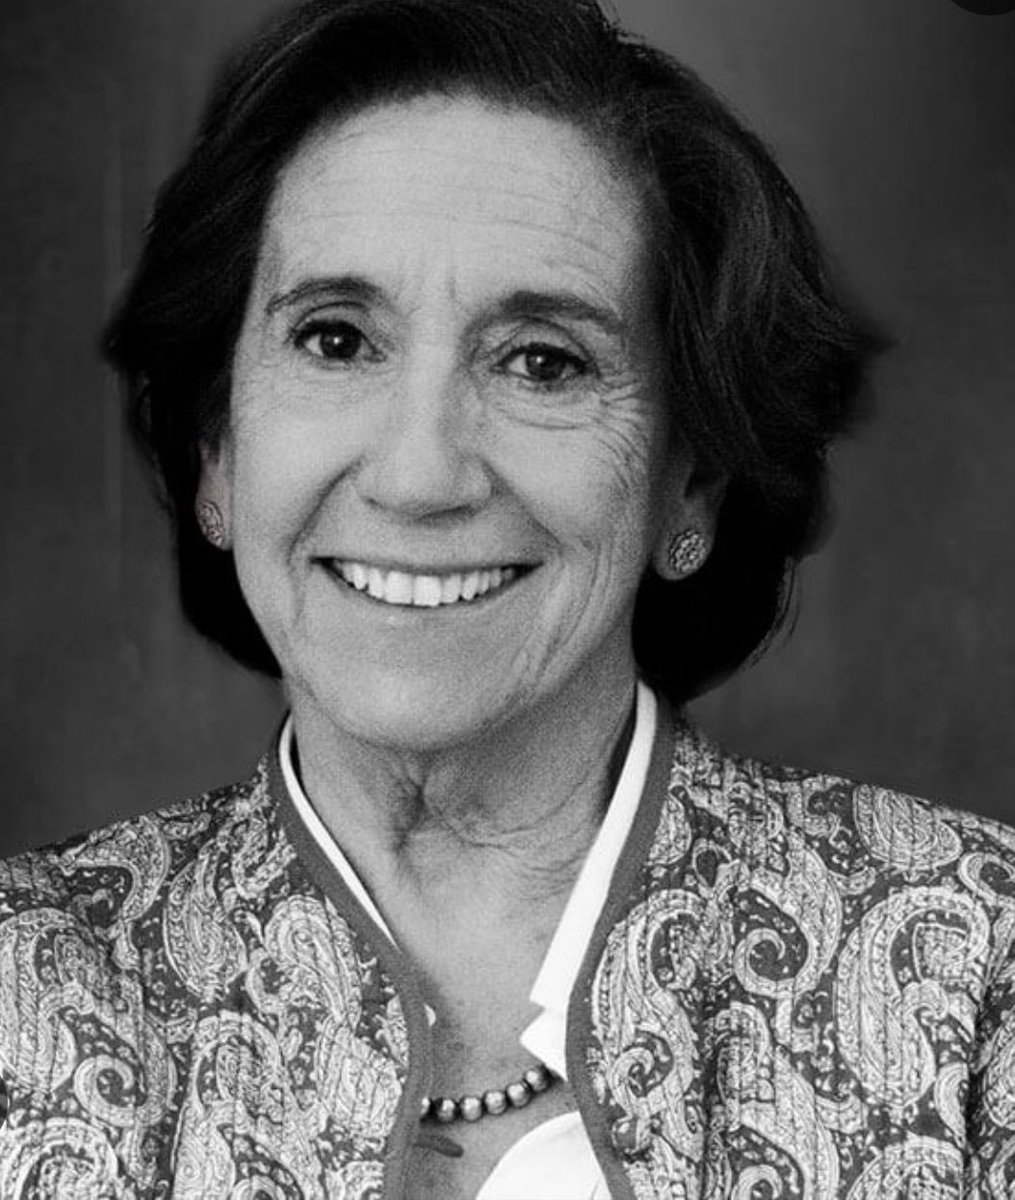 Hoy ha fallecido a los 75 años Victoria Prego, una de las voces más emblemáticas de la Transición española. La periodista fue distinguida en 2002 con el Título Honorífico de Amotinado Mayor de las Fiestas del Motín. Nos sumamos a las condolencias para sus familiares y amigos.